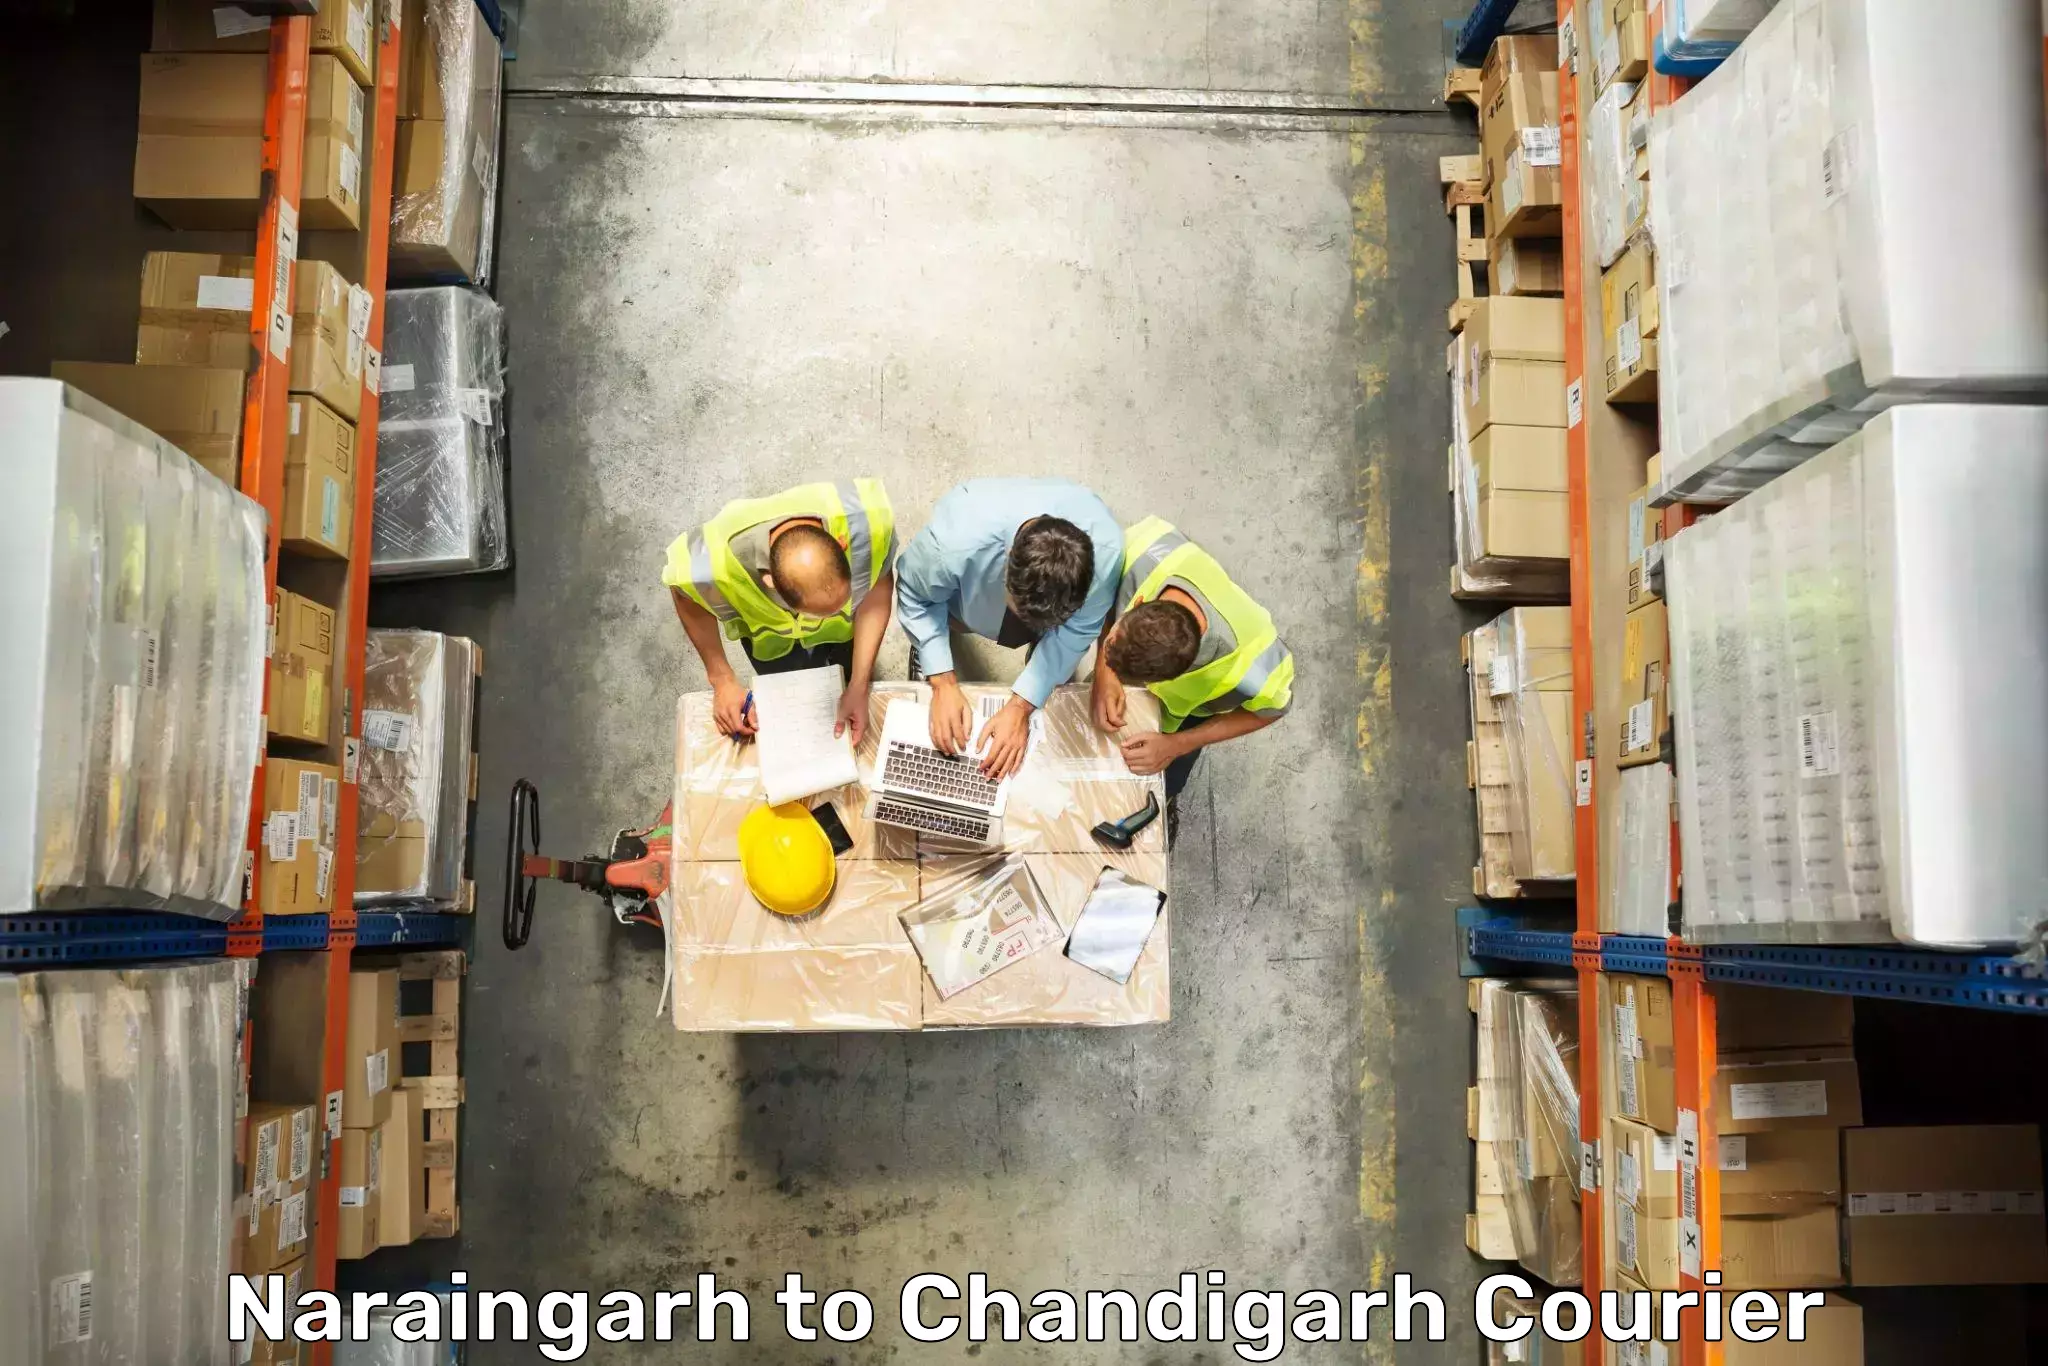 Digital baggage courier Naraingarh to Chandigarh